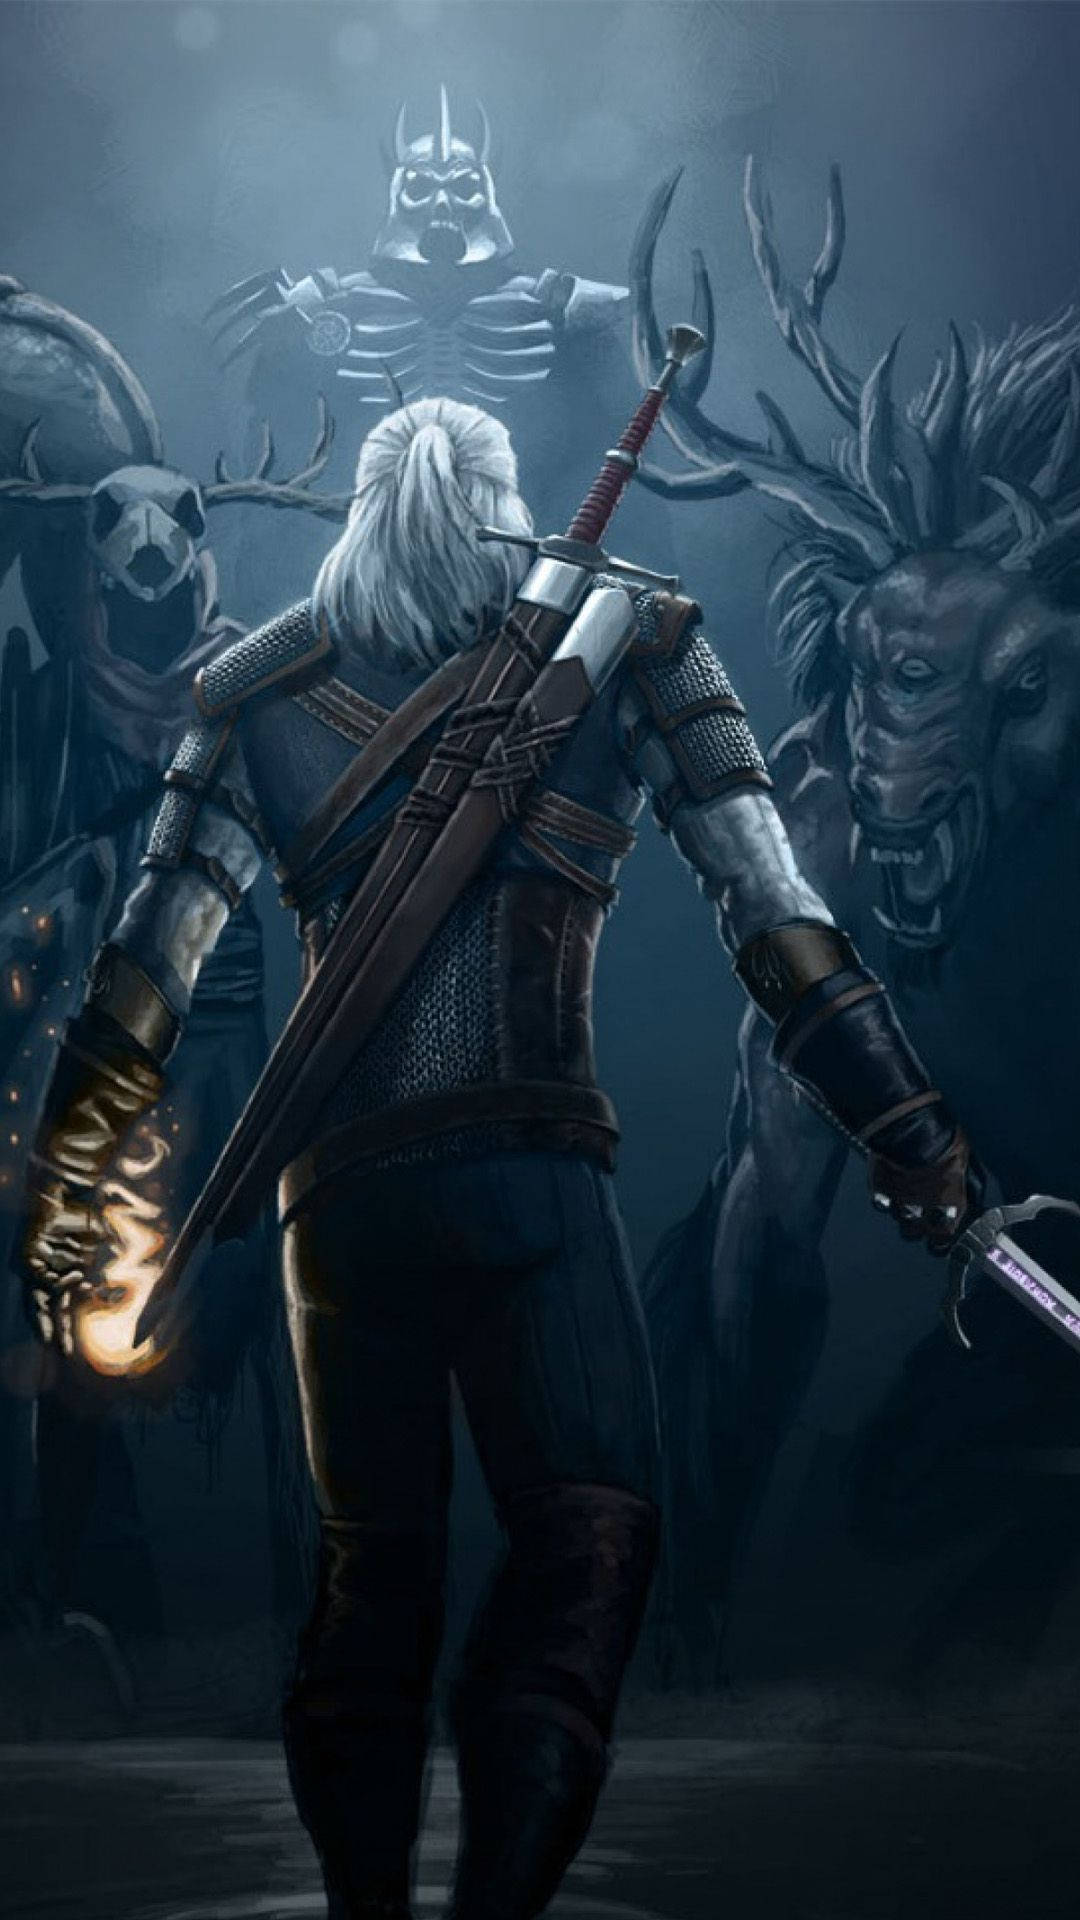 Geralt Facing His Enemies Witcher 3 Iphone Wallpaper